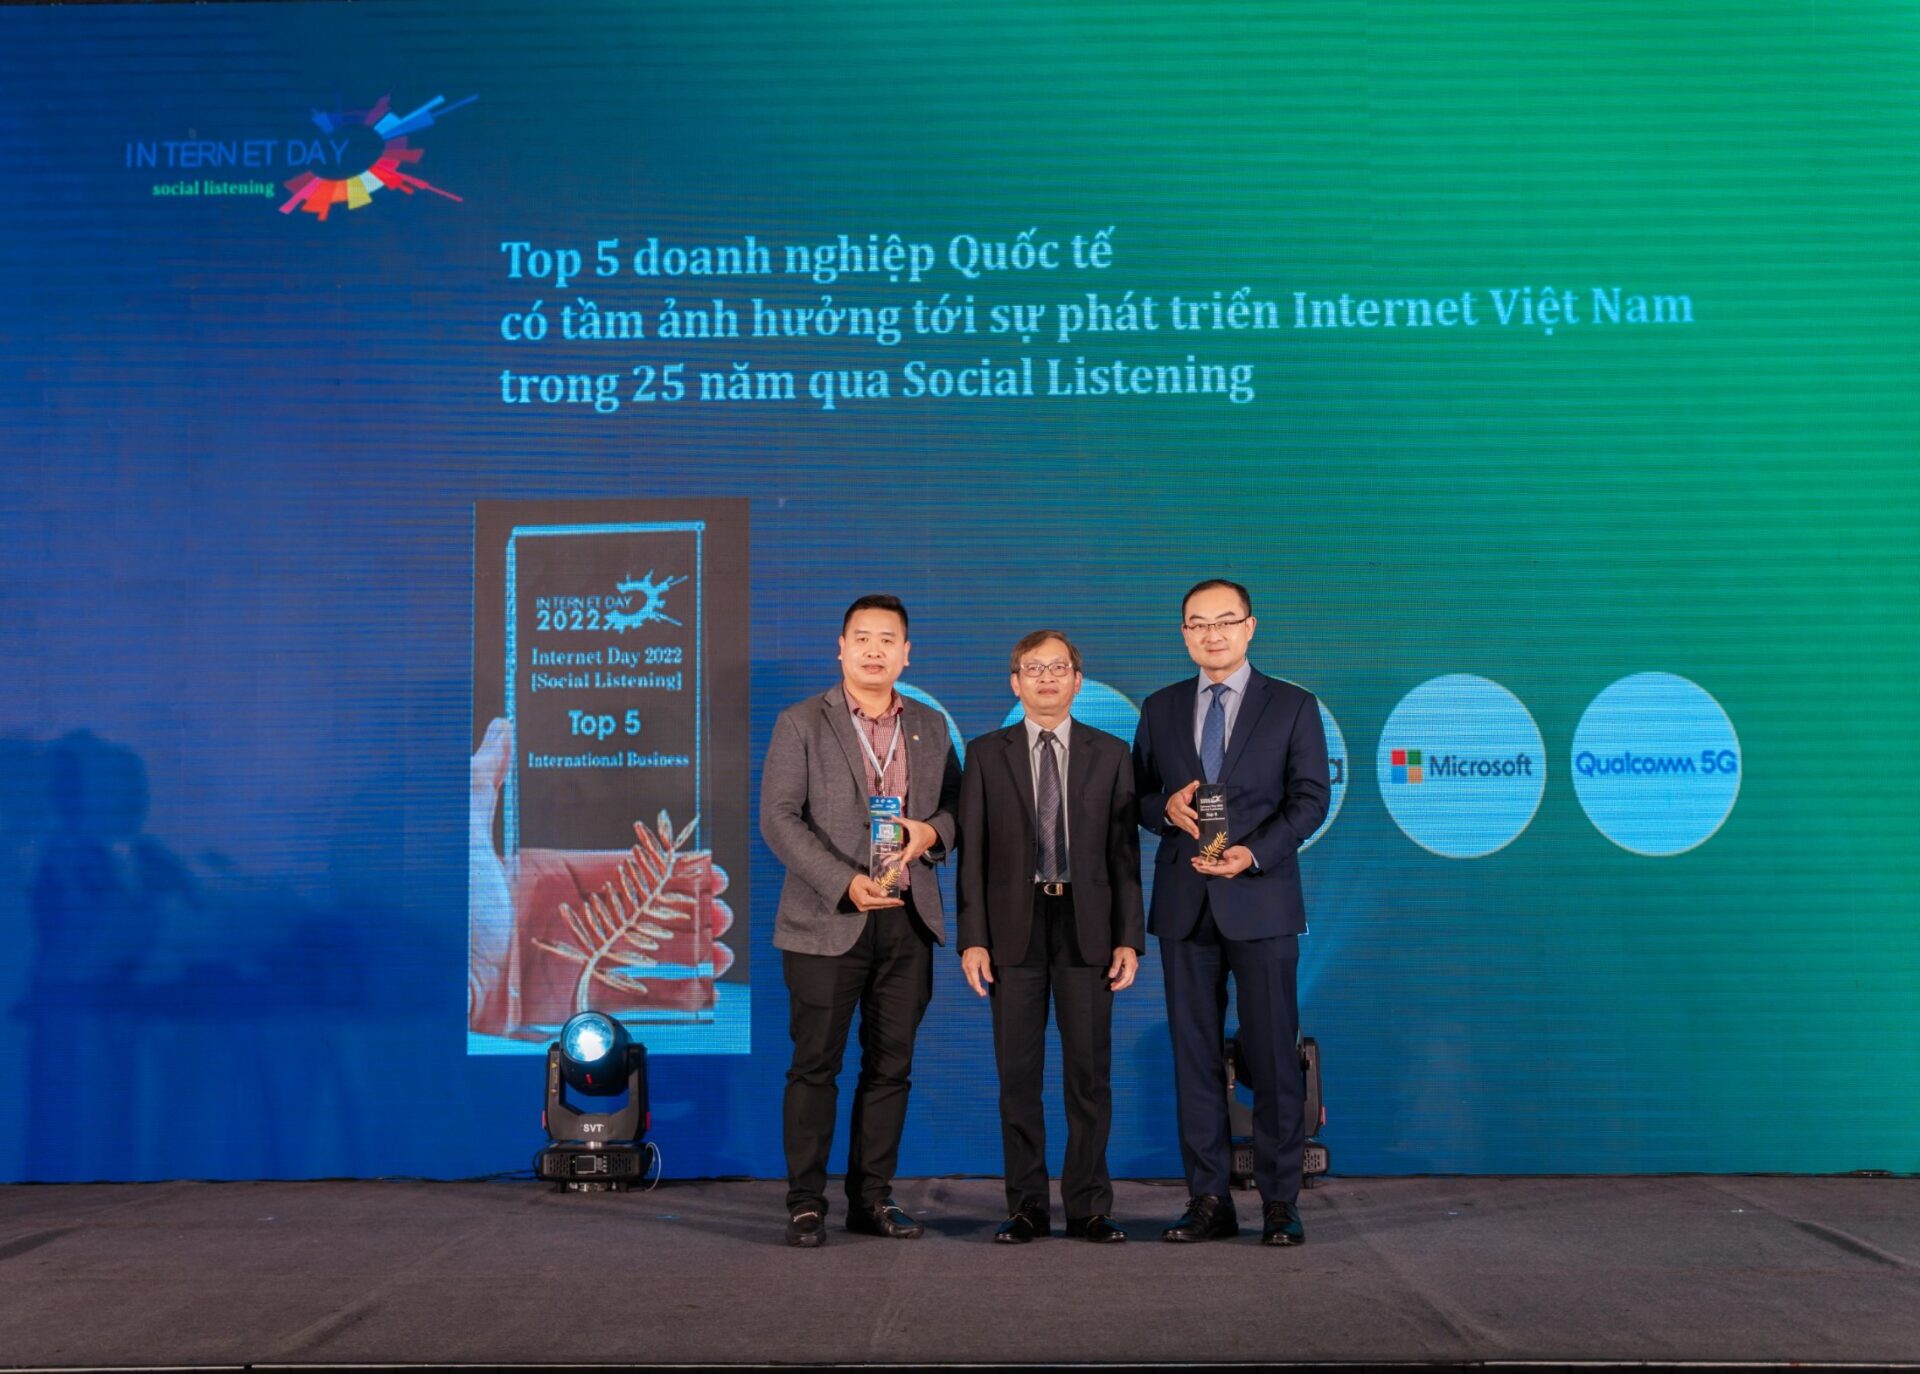 Huawei được vinh doanh Doanh nghiệp Quốc tế góp phần phát triển Internet Việt Nam